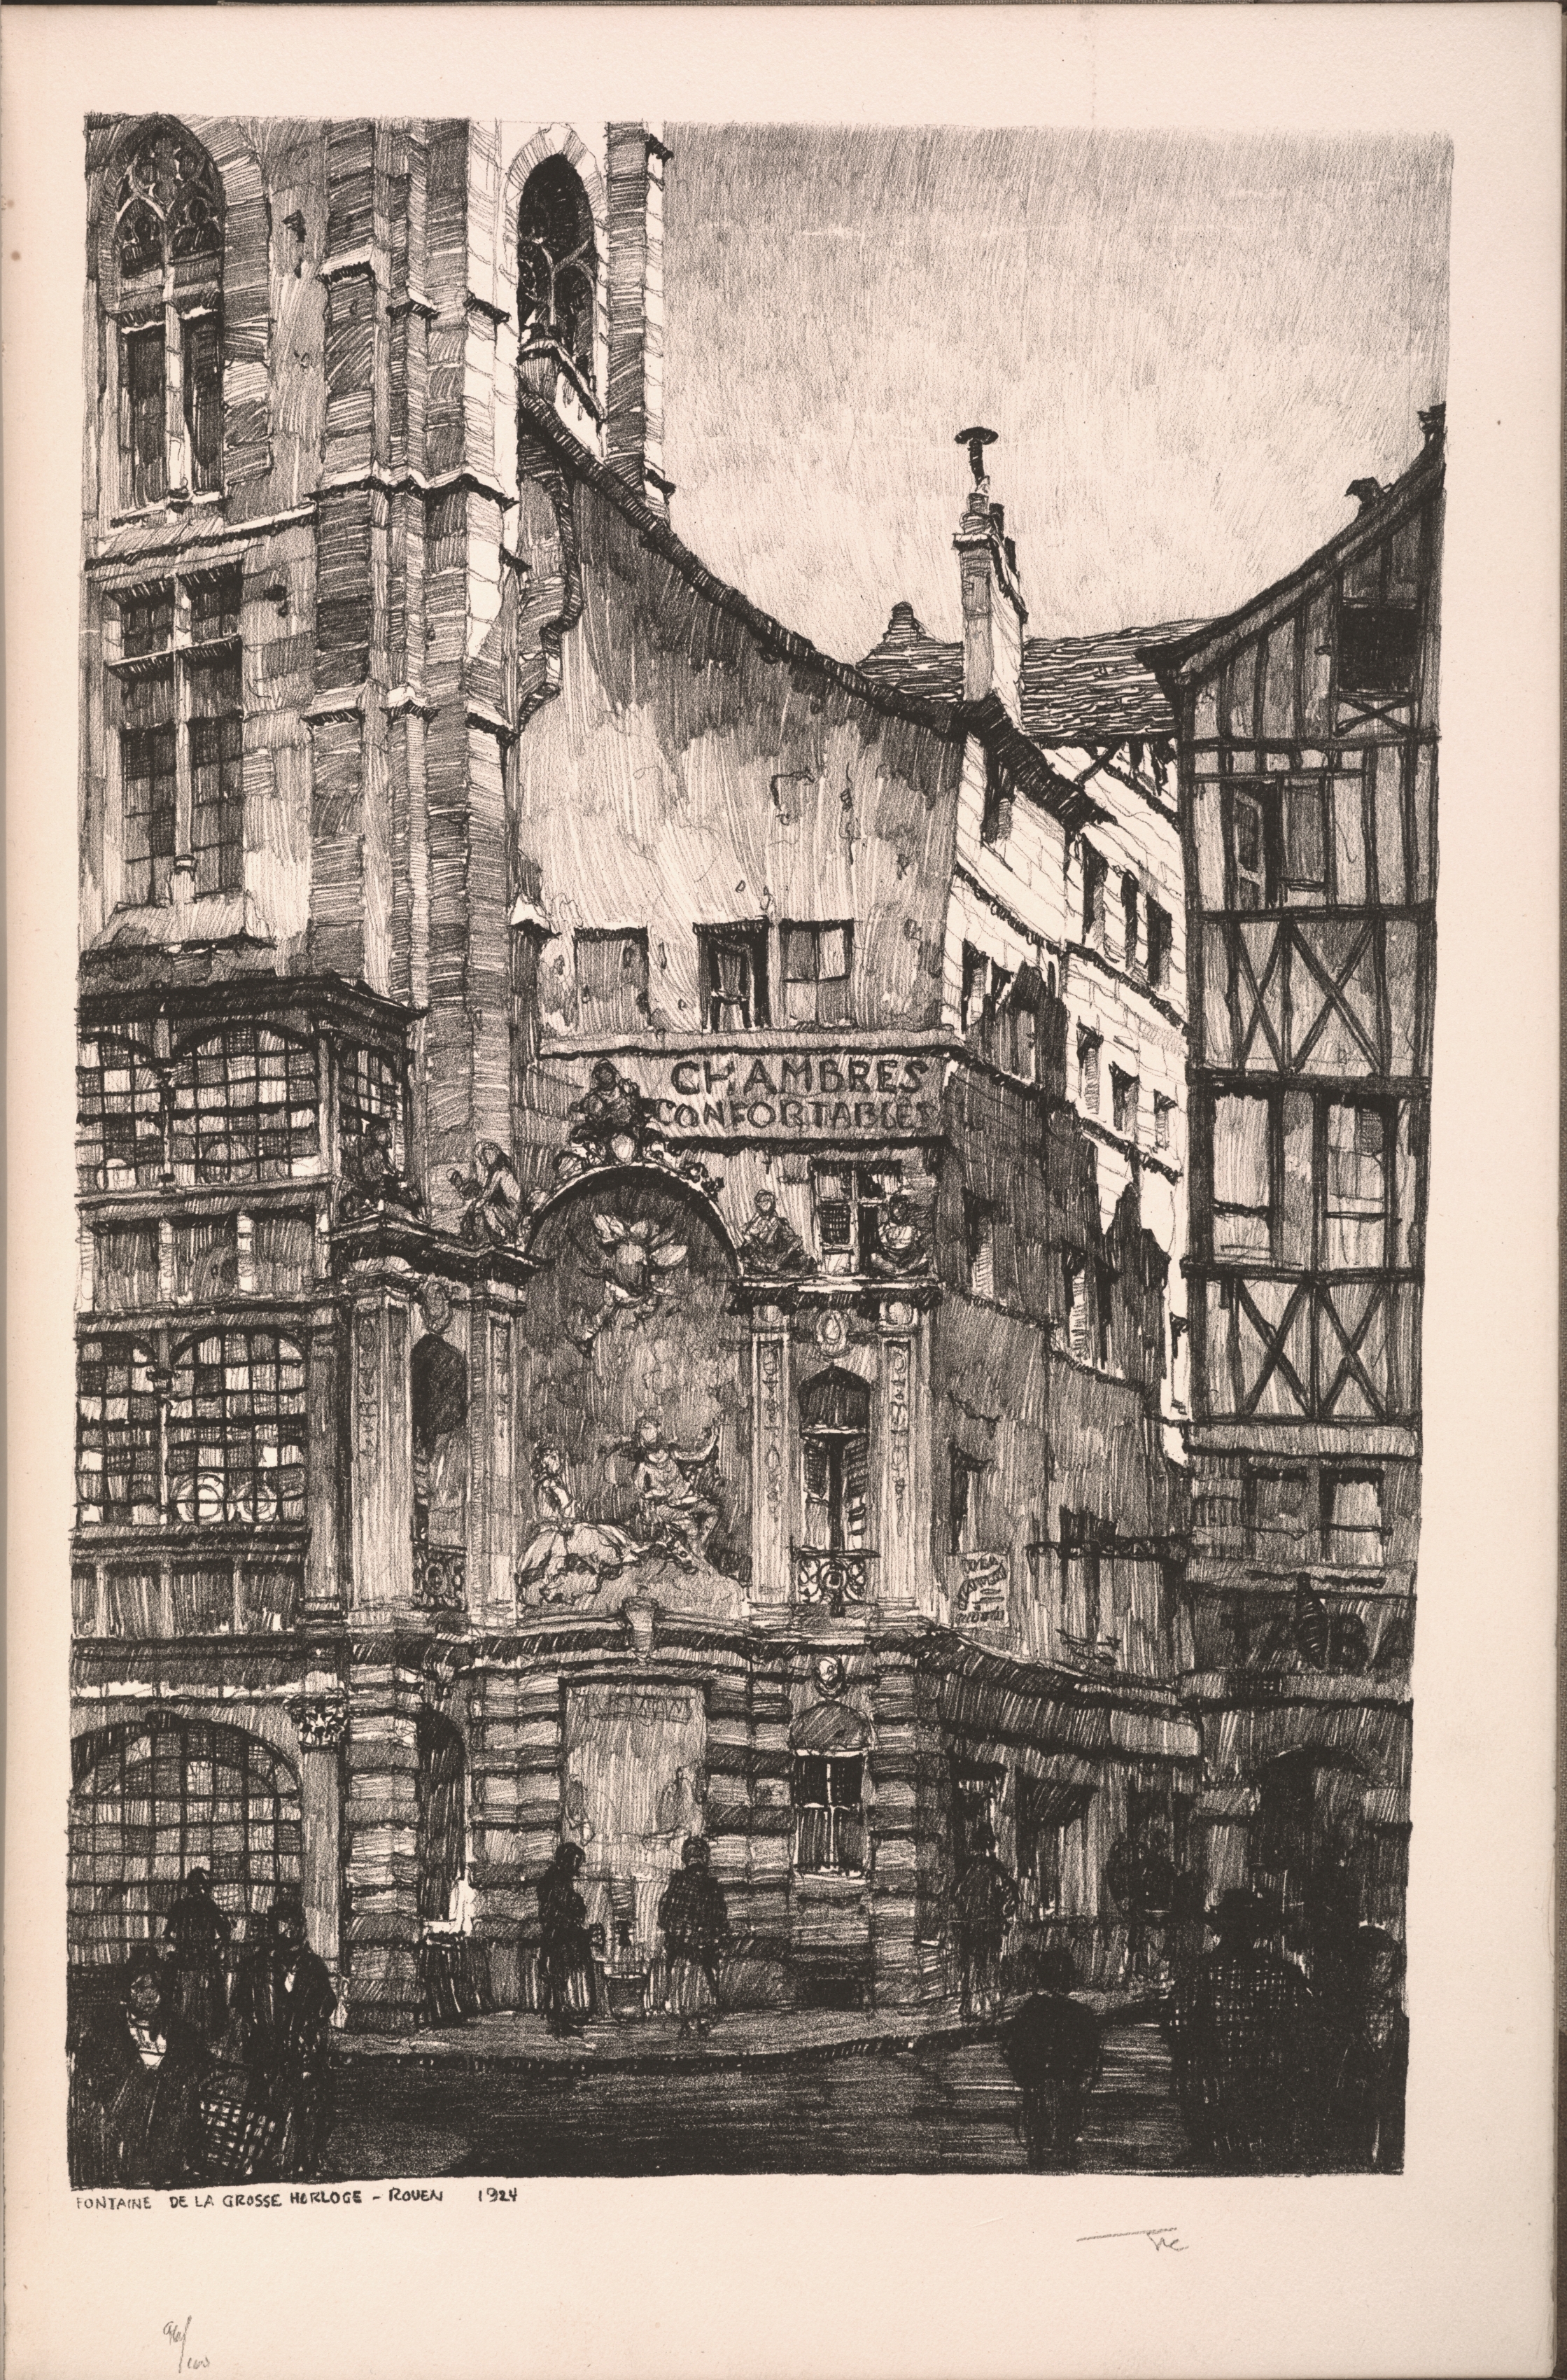 Twenty Lithographs of Old Paris: Fontaine de la Grosse Horloge, Rouen